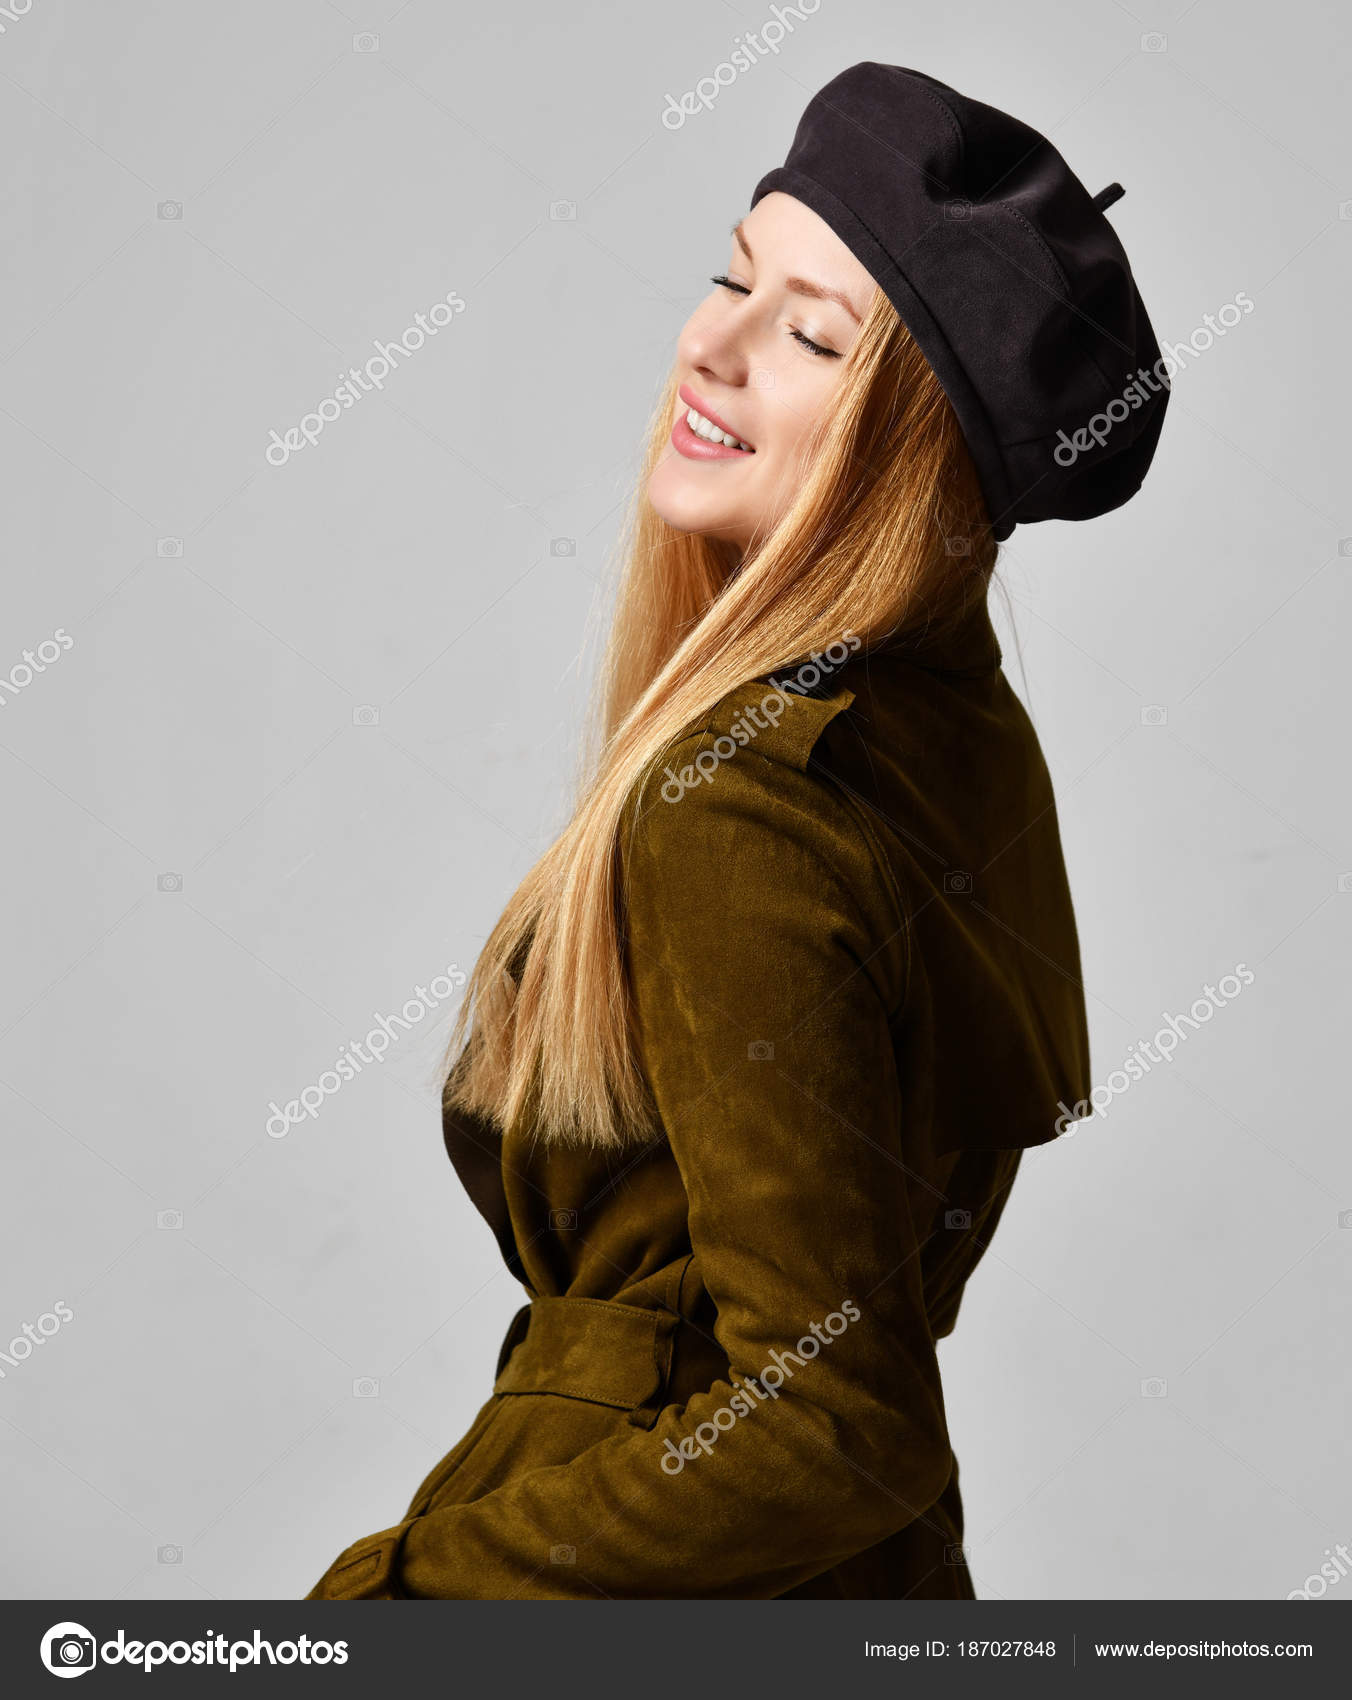 Detallado compilar A la verdad Joven morena sexy mujer en sombrero de boina marrón oscuro y chaqueta de  primavera abrigo mirando a la esquina: fotografía de stock © dml5050  #187027848 | Depositphotos